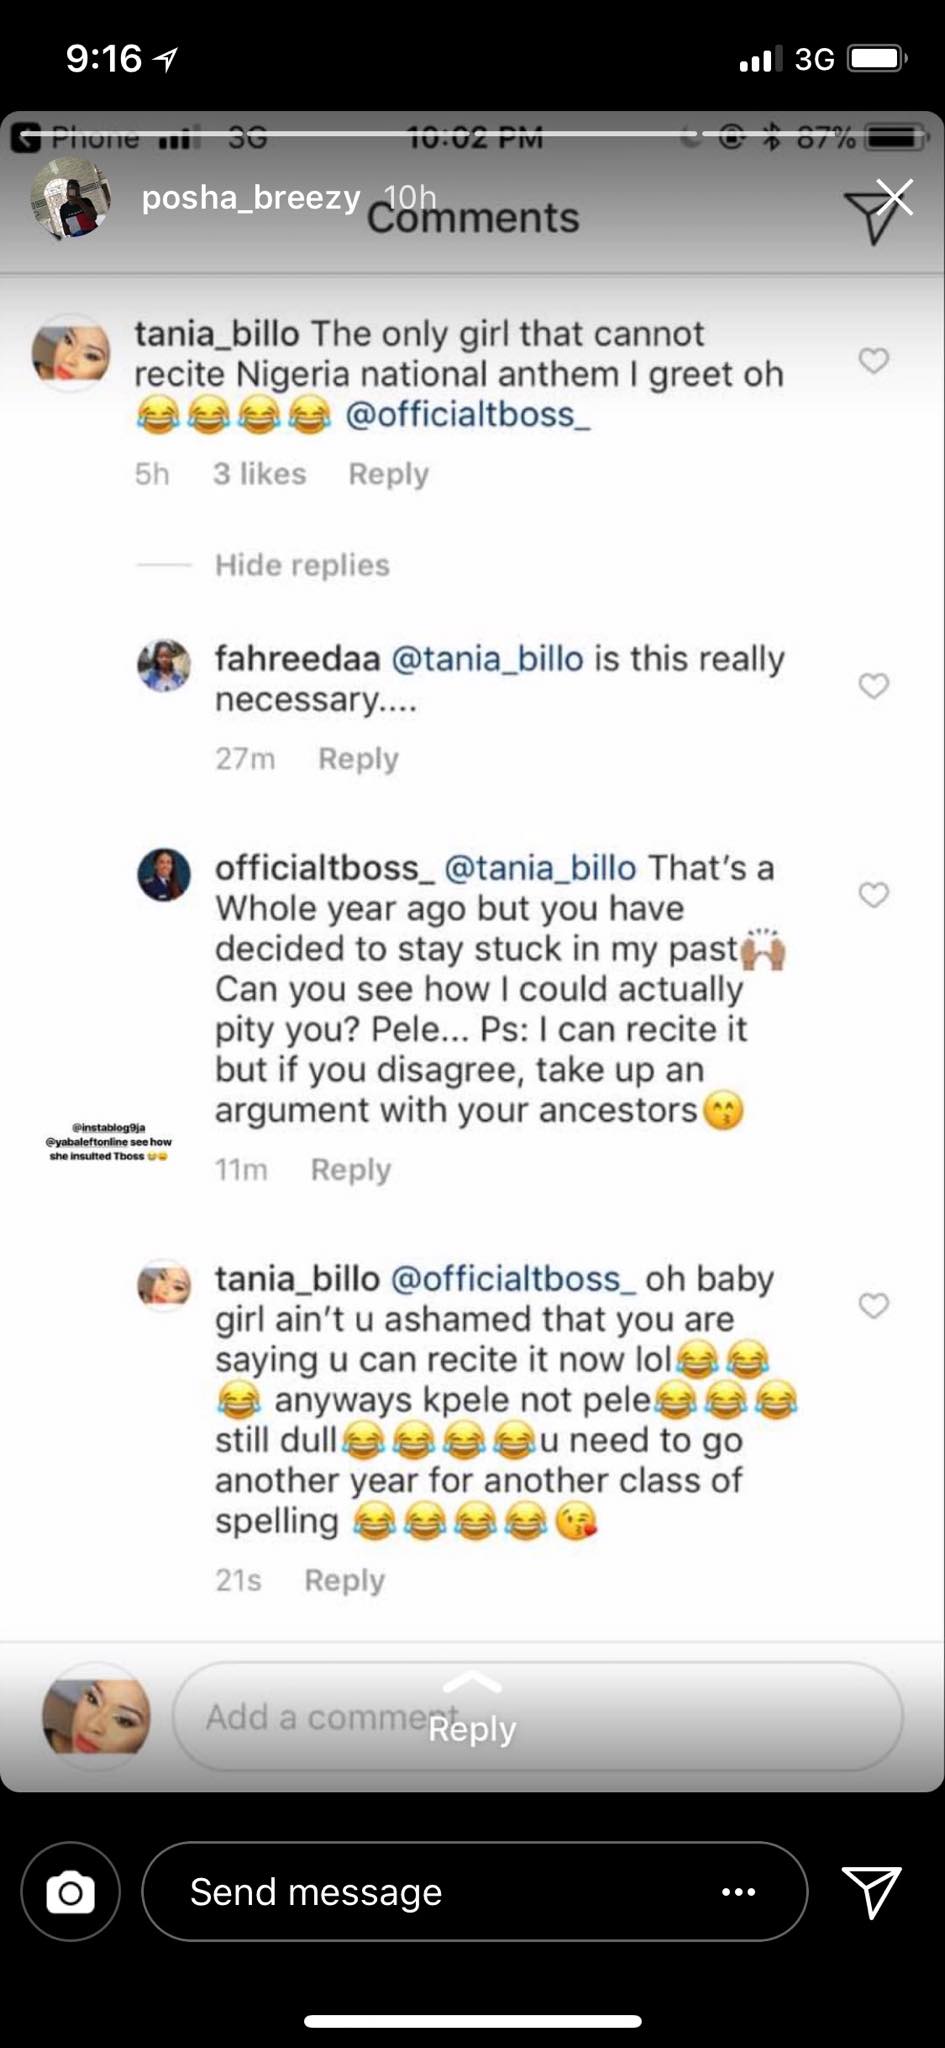 'You're still dull' - follower blasts Tboss, She responds